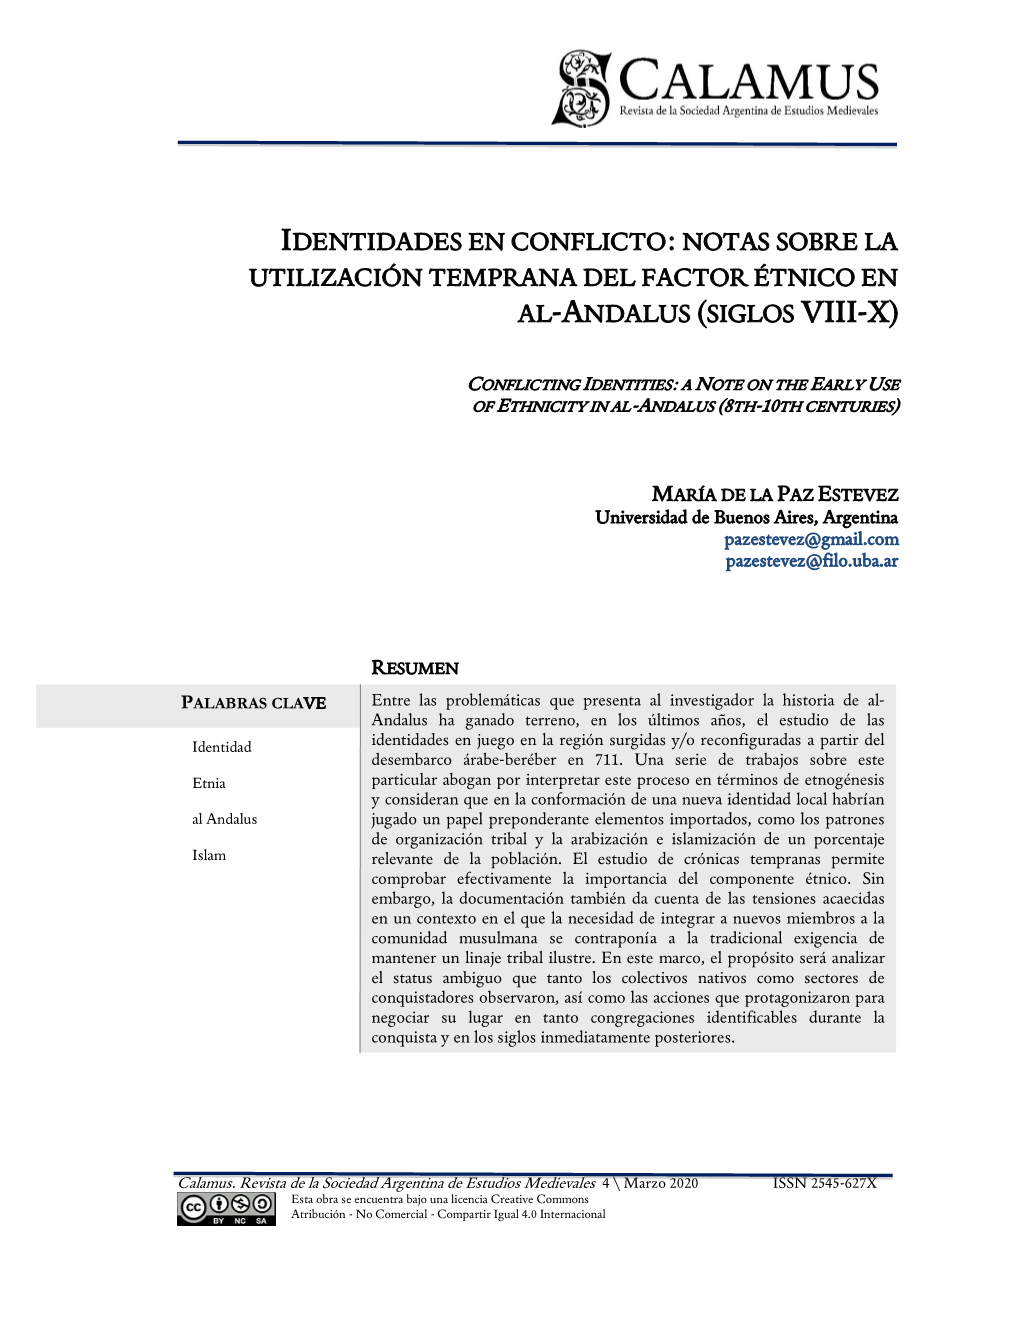 Notas Sobre La Utilización Temprana Del Factor Étnico En Al-Andalus (Siglos Viii-X)